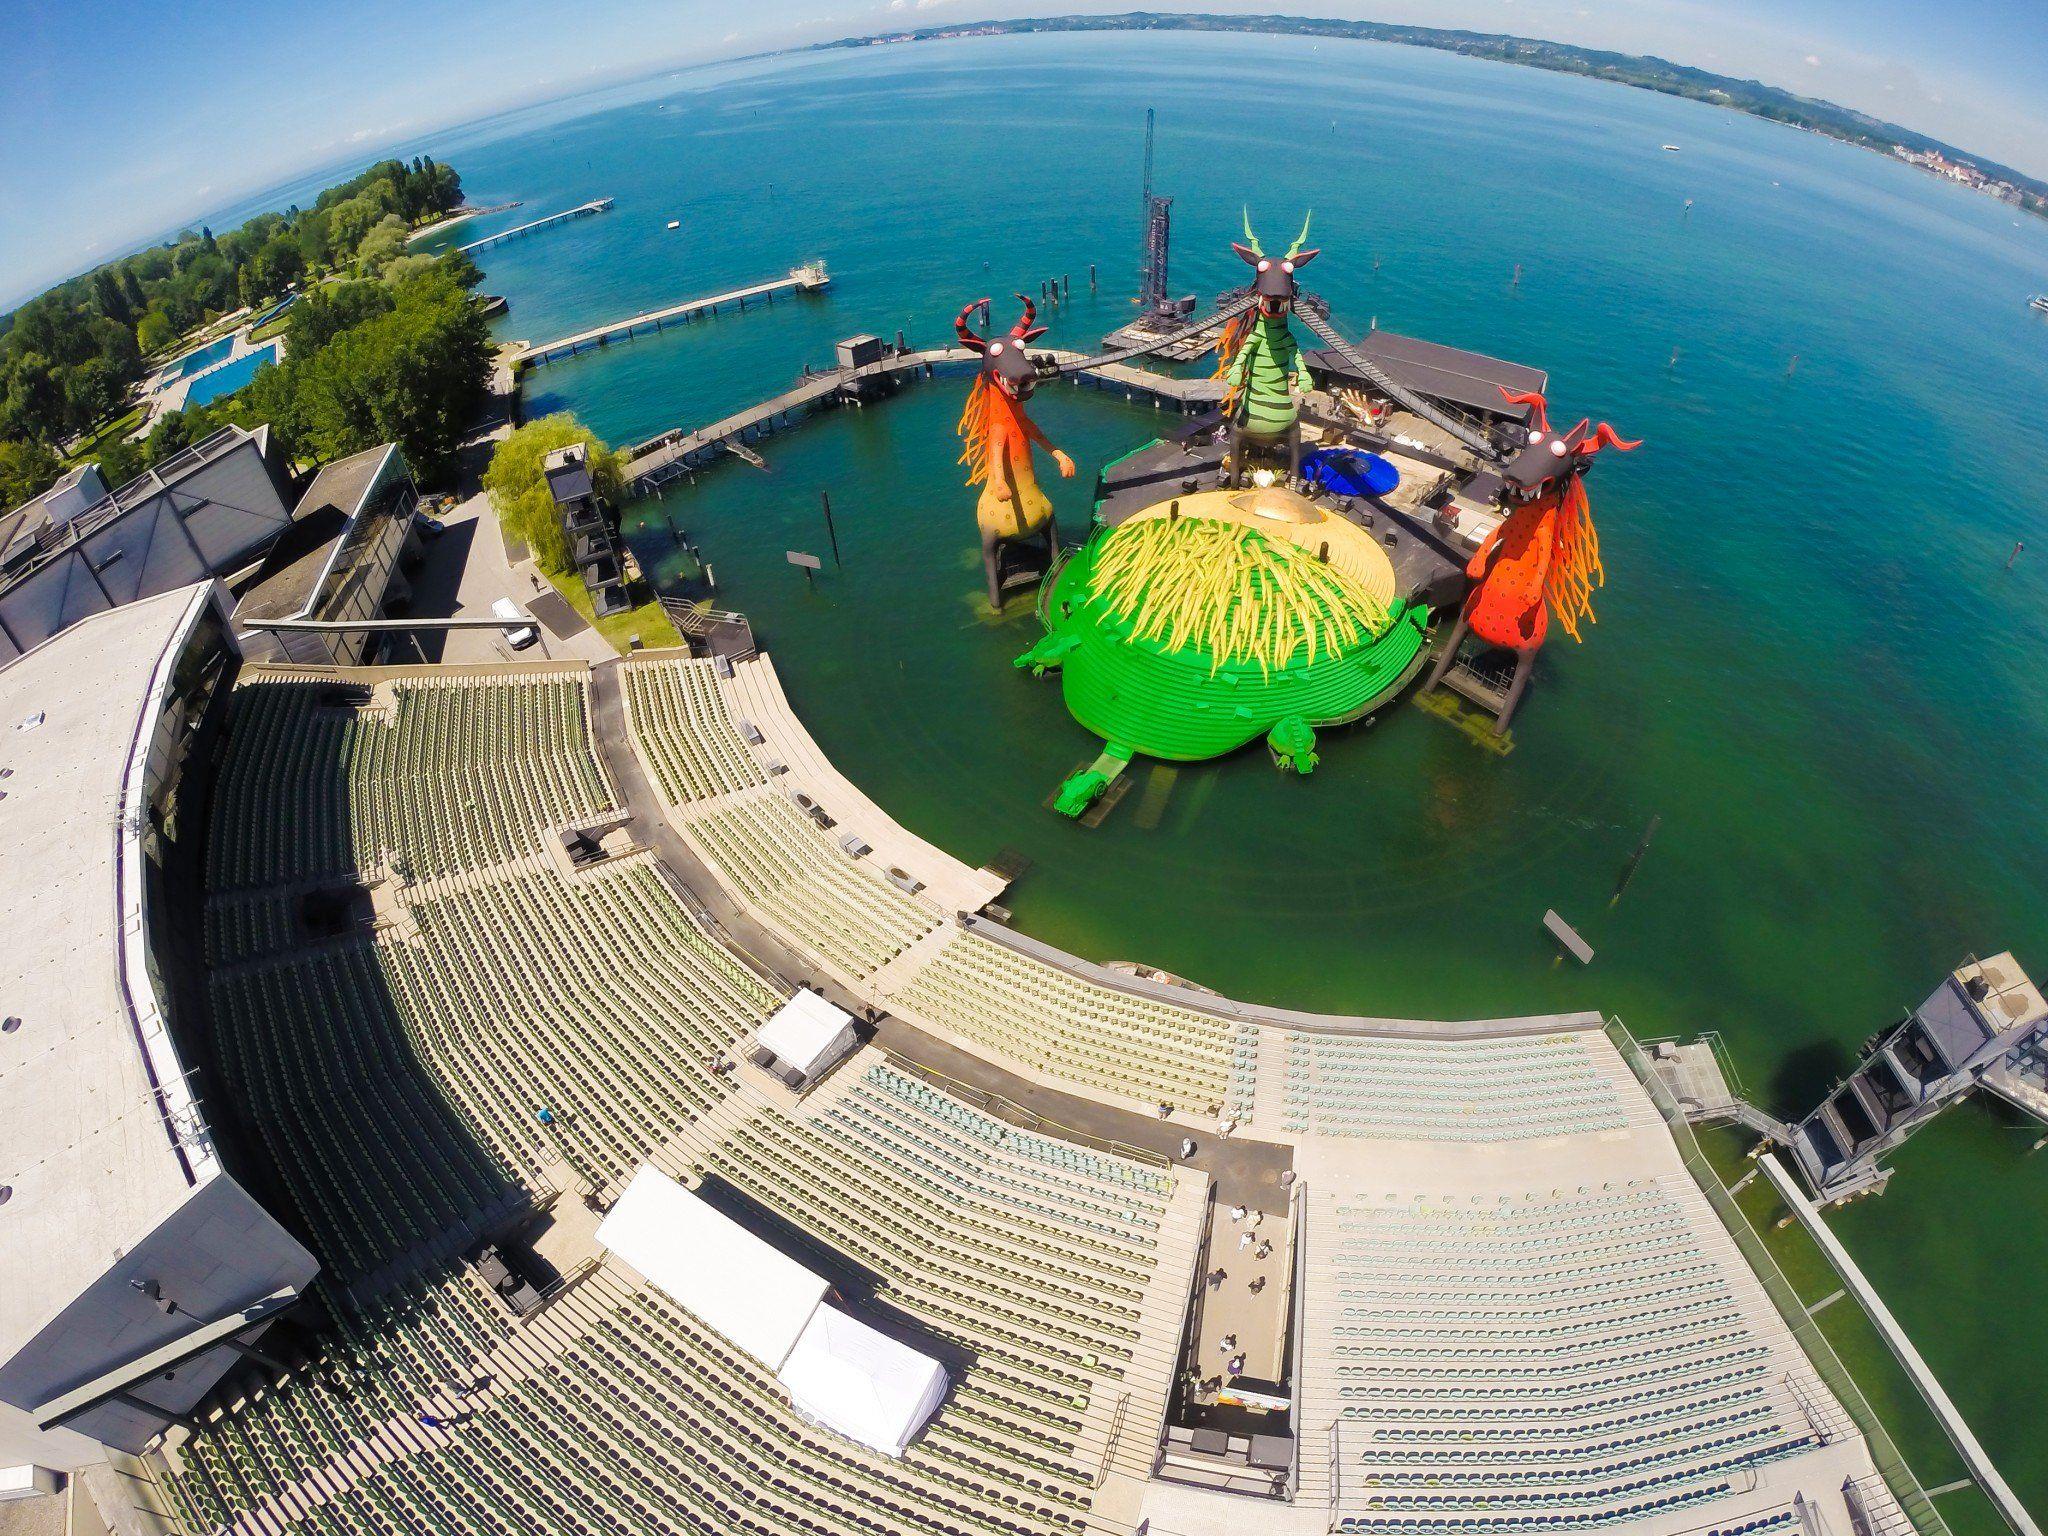 Luftbild von der Bregenzer Festspielbühne auf dem Bodensee.